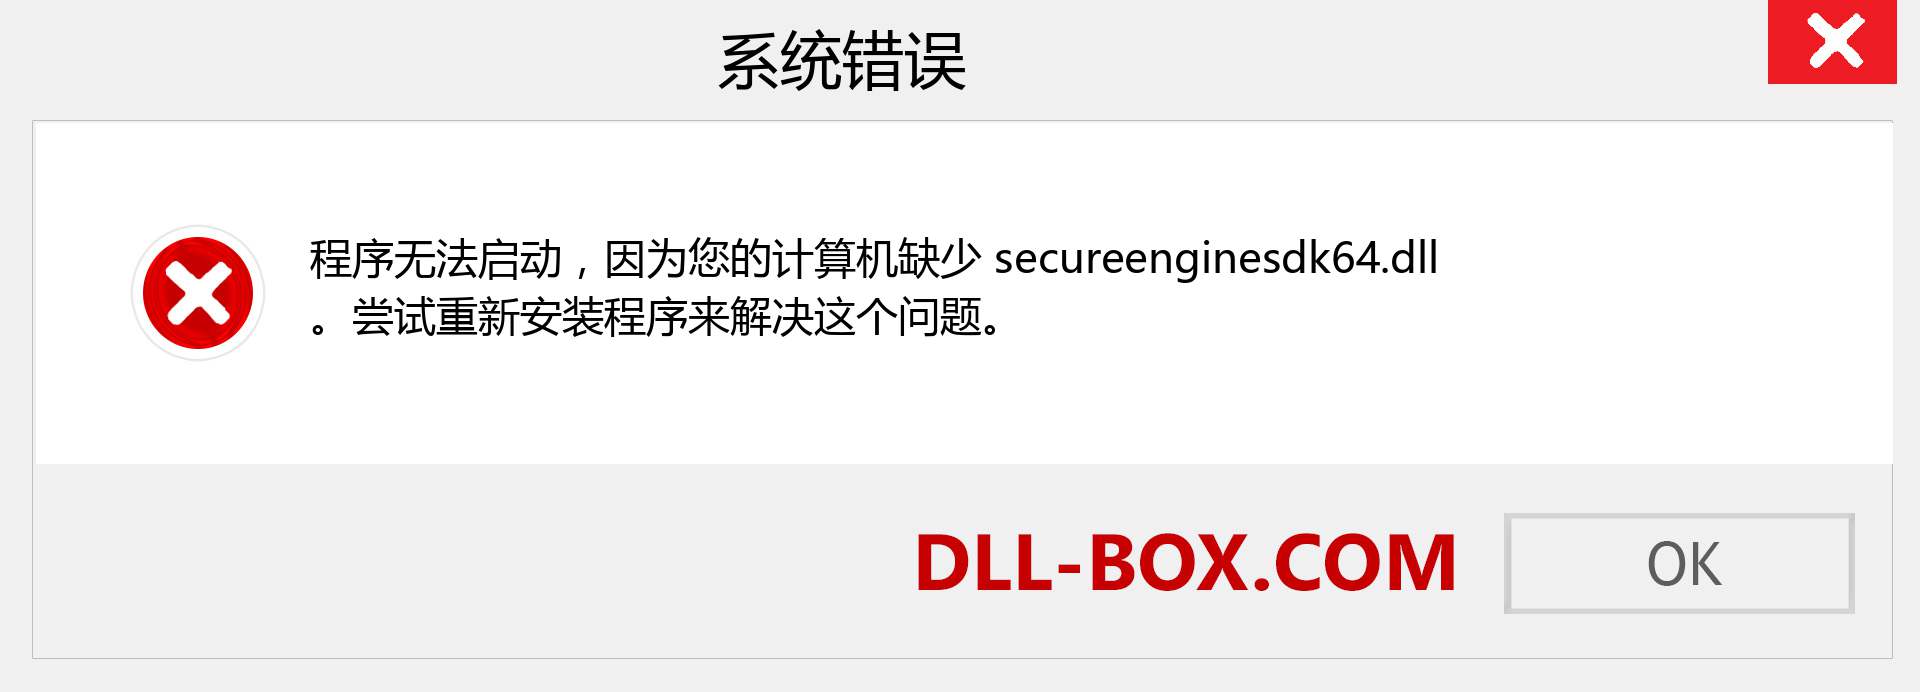 secureenginesdk64.dll 文件丢失？。 适用于 Windows 7、8、10 的下载 - 修复 Windows、照片、图像上的 secureenginesdk64 dll 丢失错误